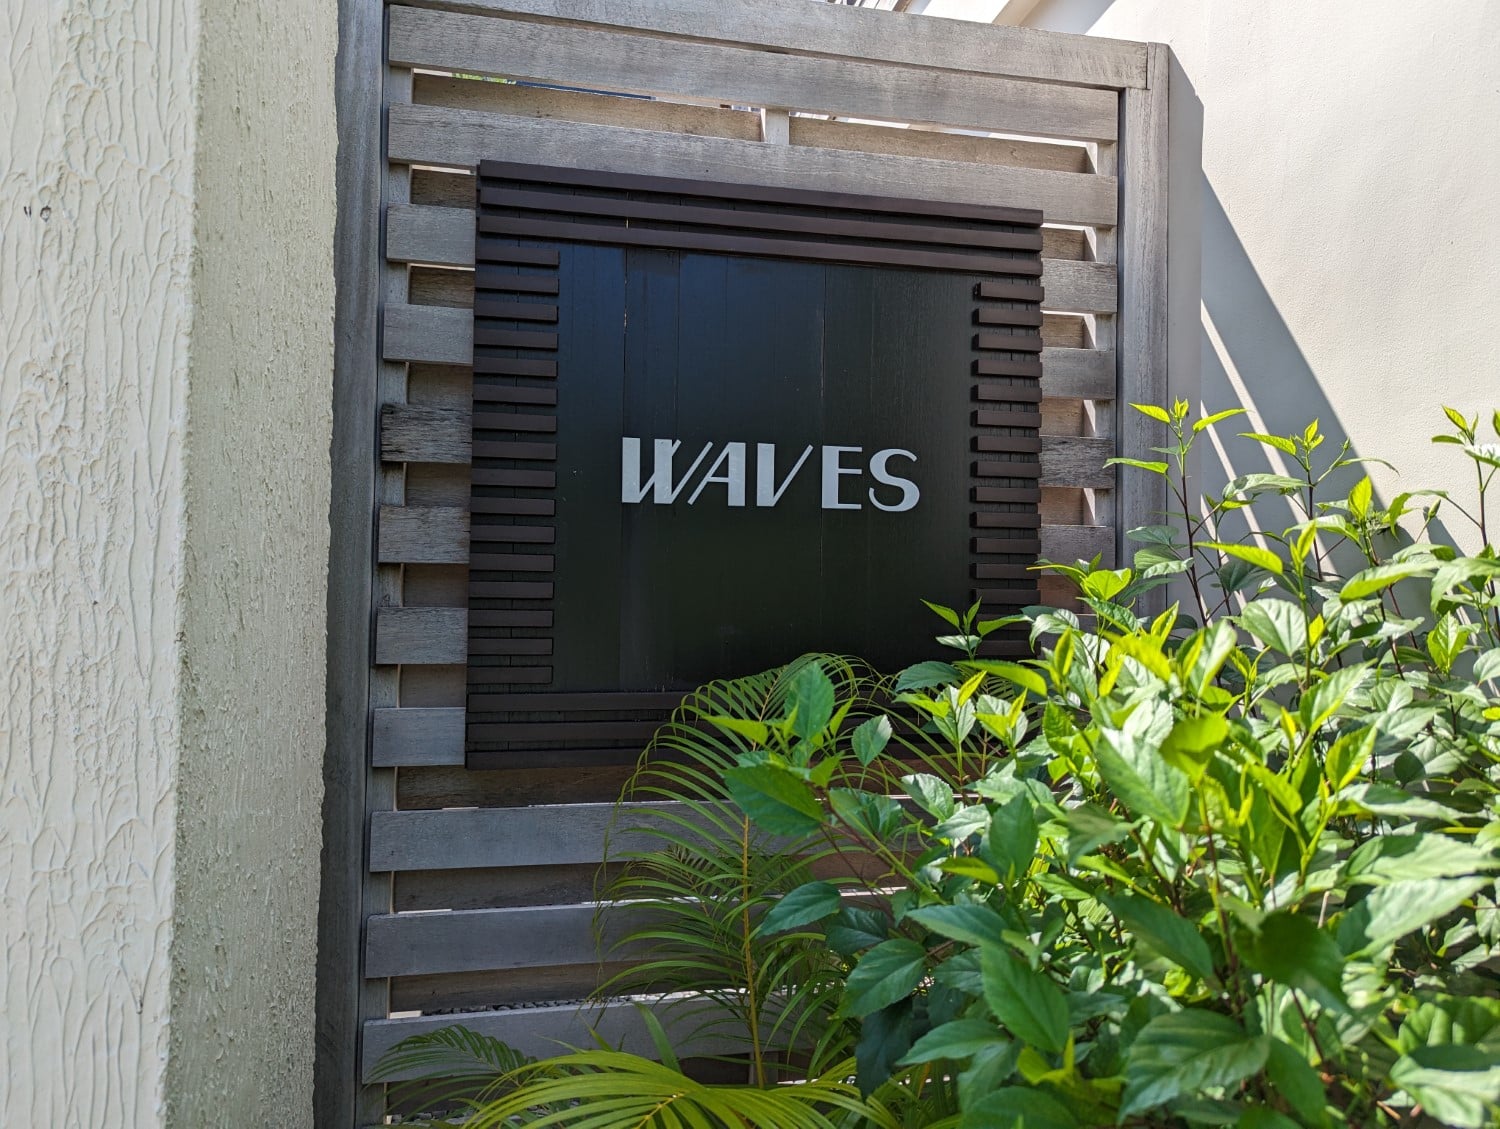 le meridien maldives resort & spa waves cafe sign